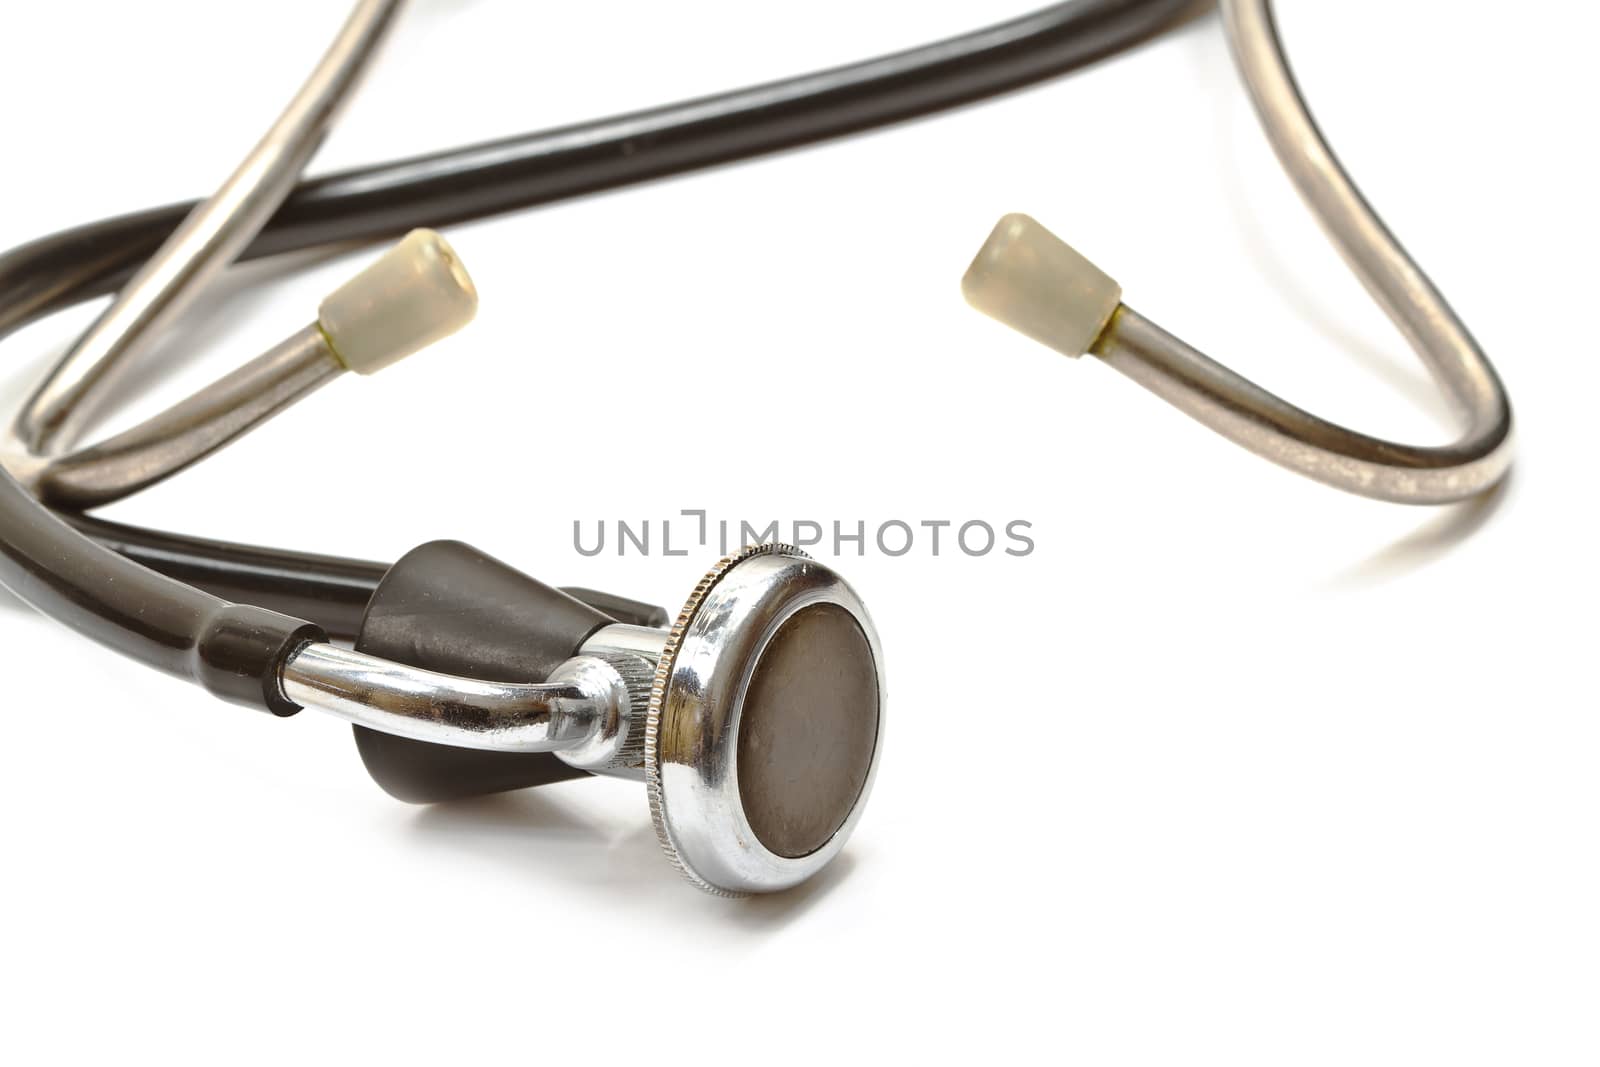 Medical stethoscope isolated on white background. Closeup